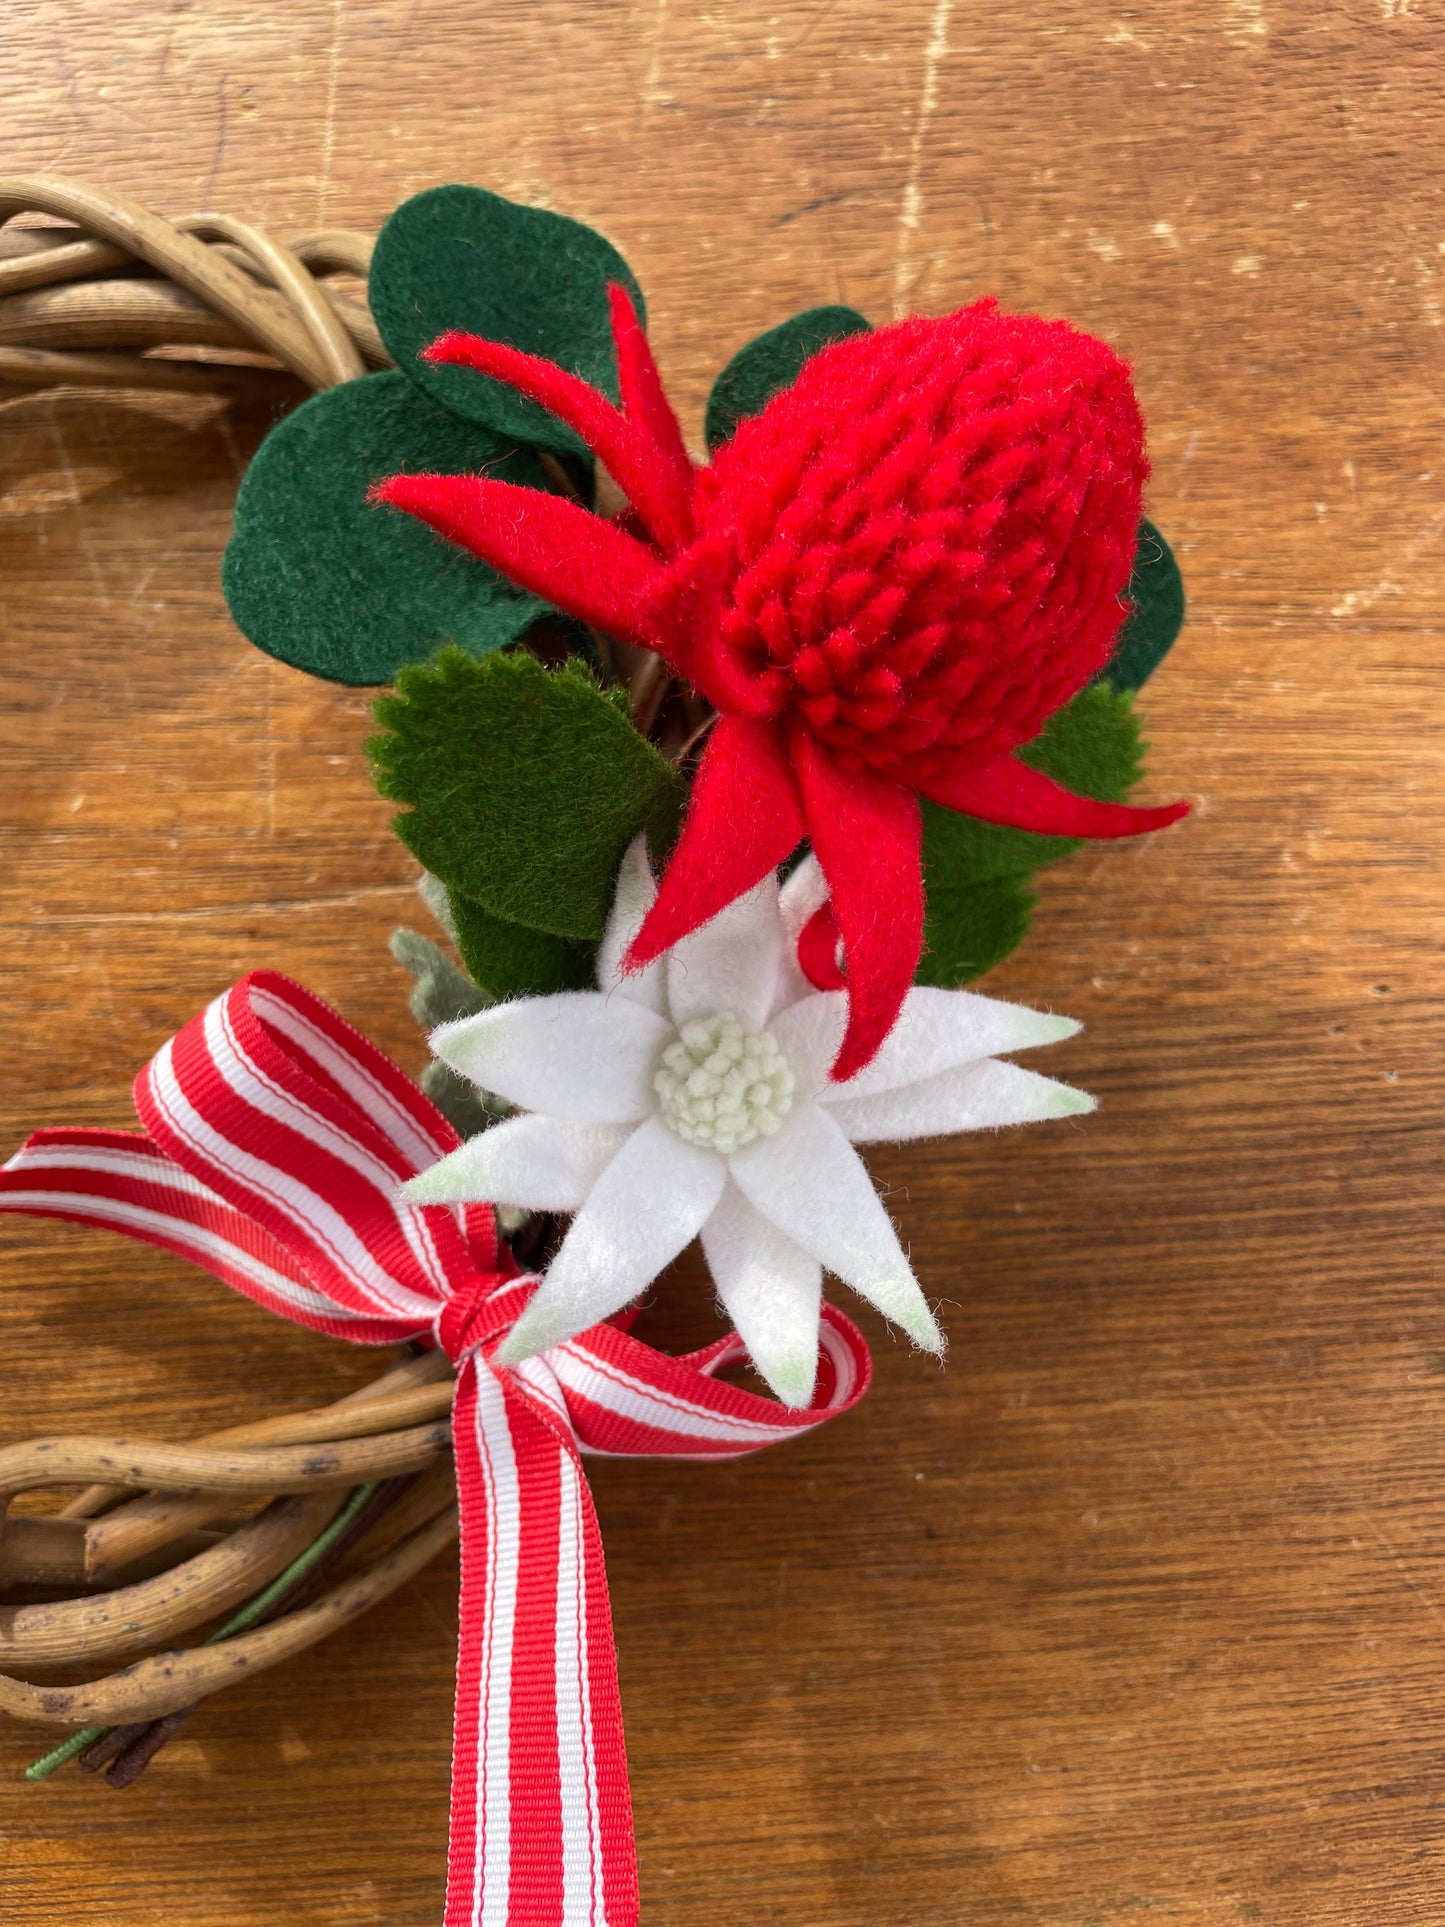 Waratah and Flannel flower wreath